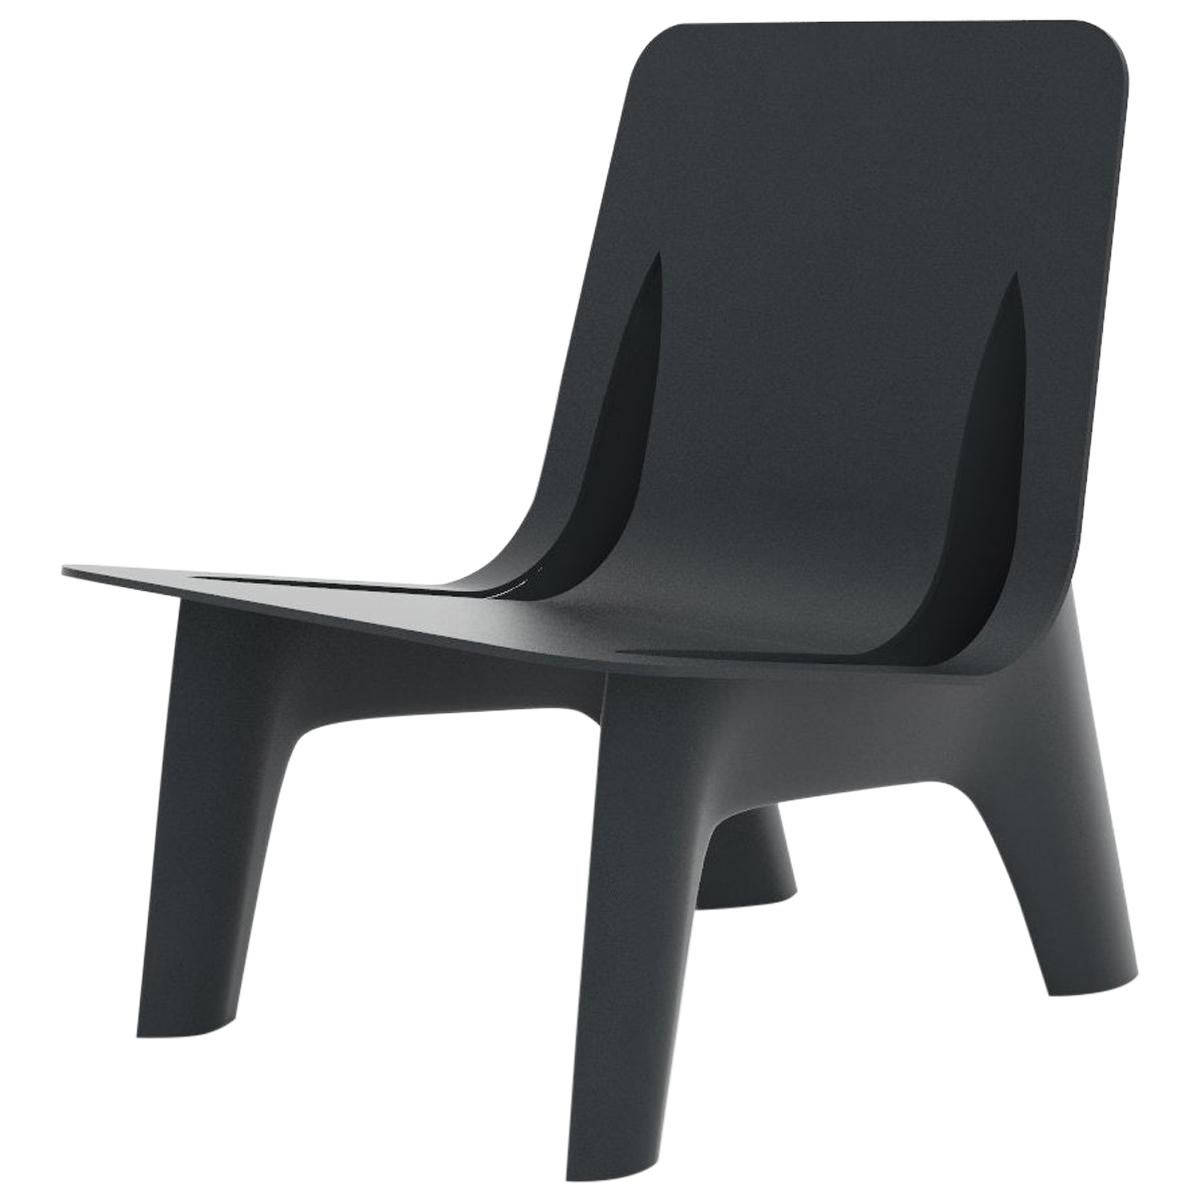 Chaise longue J-Chair en aluminium poli de couleur grise et graphite par Zieta en vente